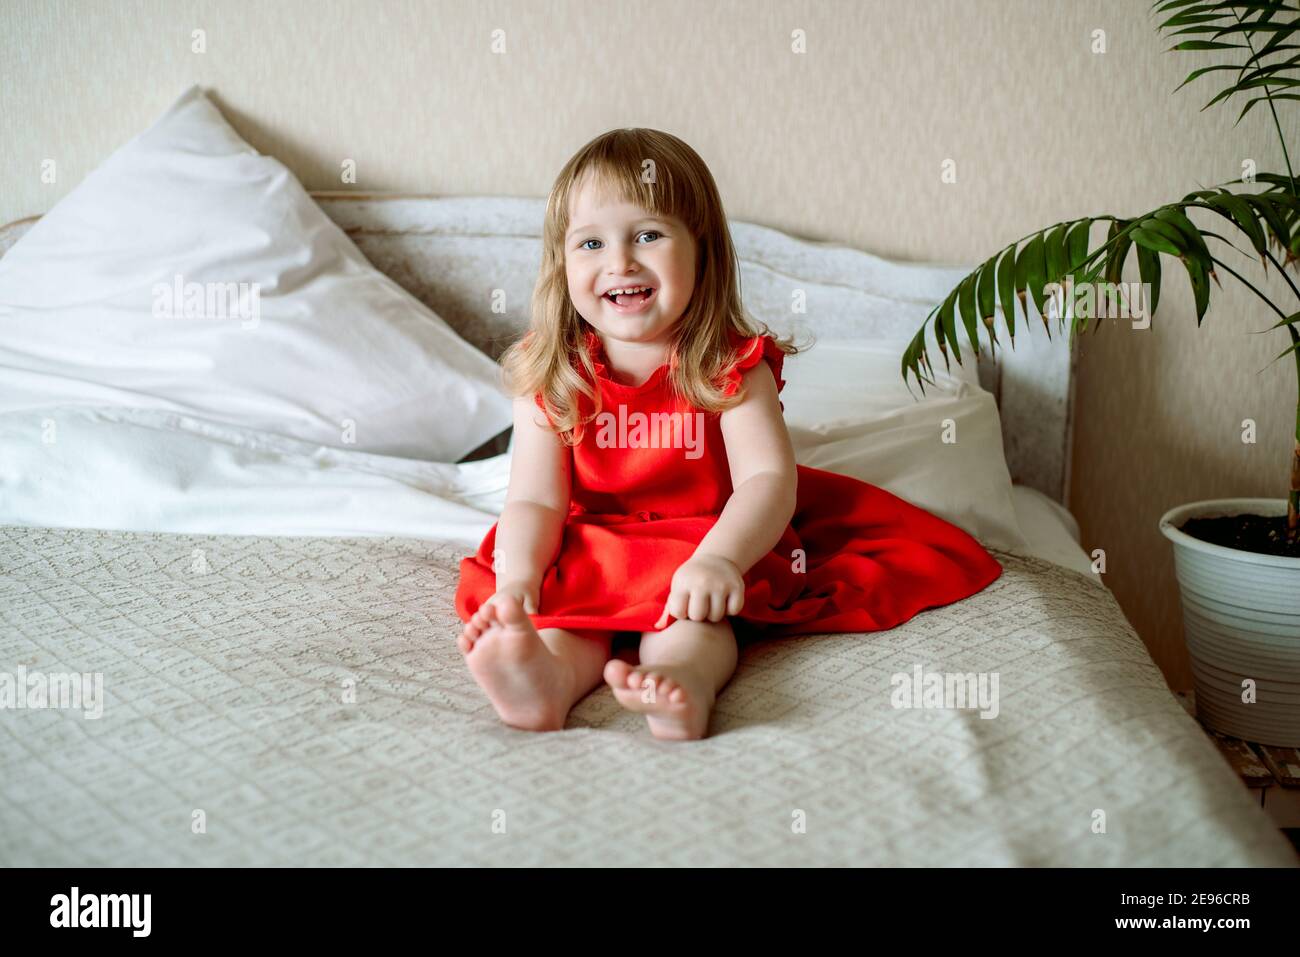 Niedliches rothaariges blauäugiges emotionales Mädchen lacht. Liegt auf dem Bett im Schlafzimmer, das Bett ist ein weißes Bett, ein rotes Kleid für ein Kind. Kissen und Stockfoto